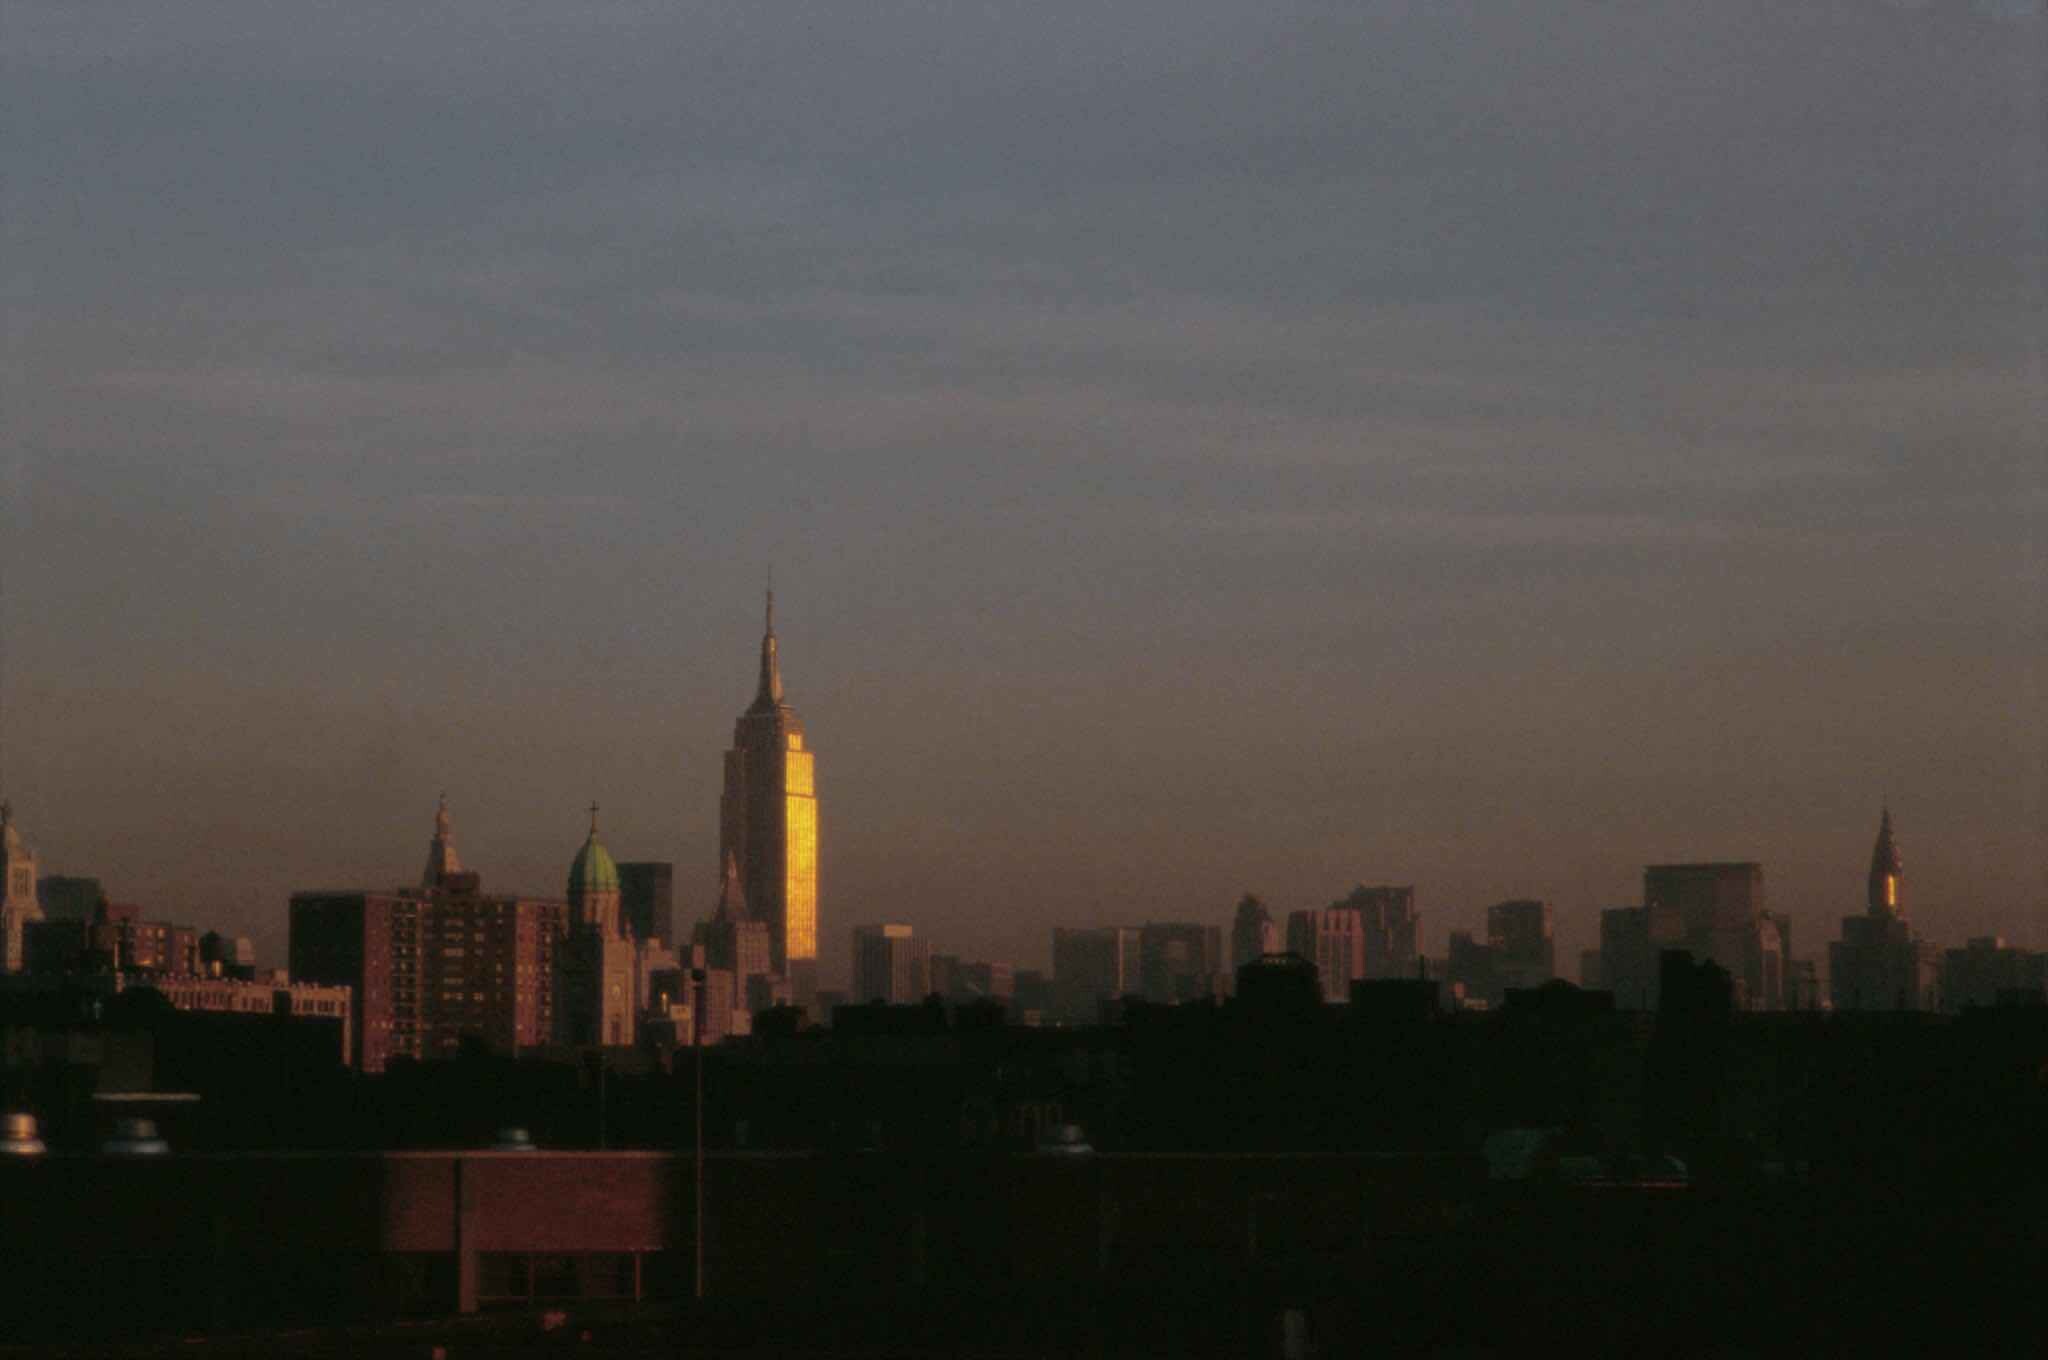 1986 год, Нью-Йорк, горизонт с Крайслер-билдинг, вид из Мидтауна ранним утром. Фотограф Франк Хорват